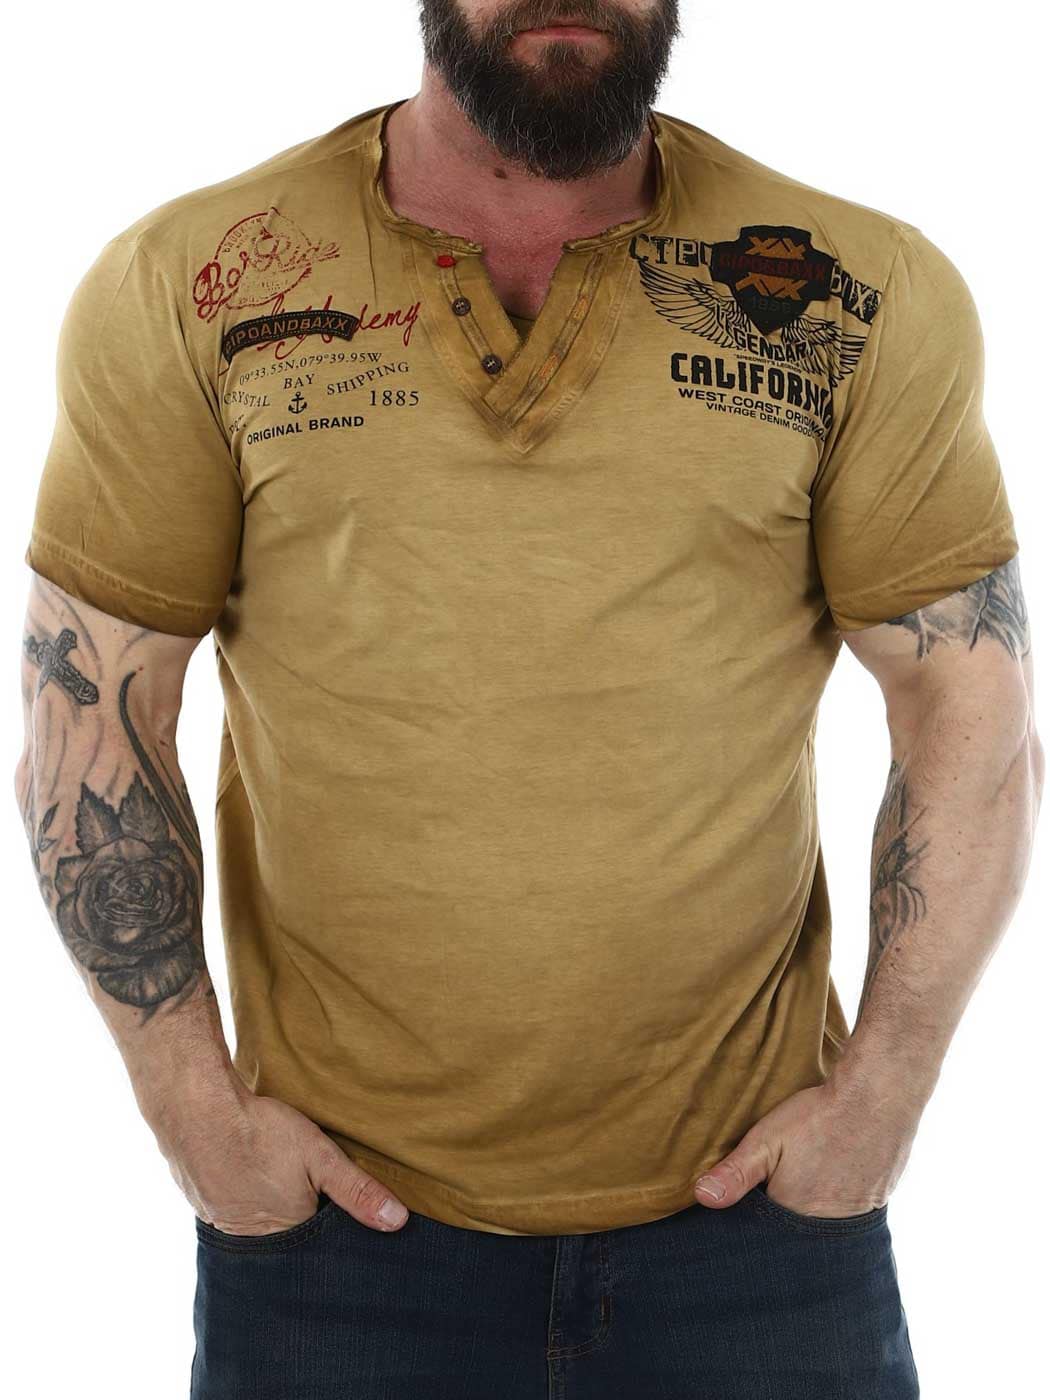 Bay Cipo Baxx T-shirt - beige_1.jpg